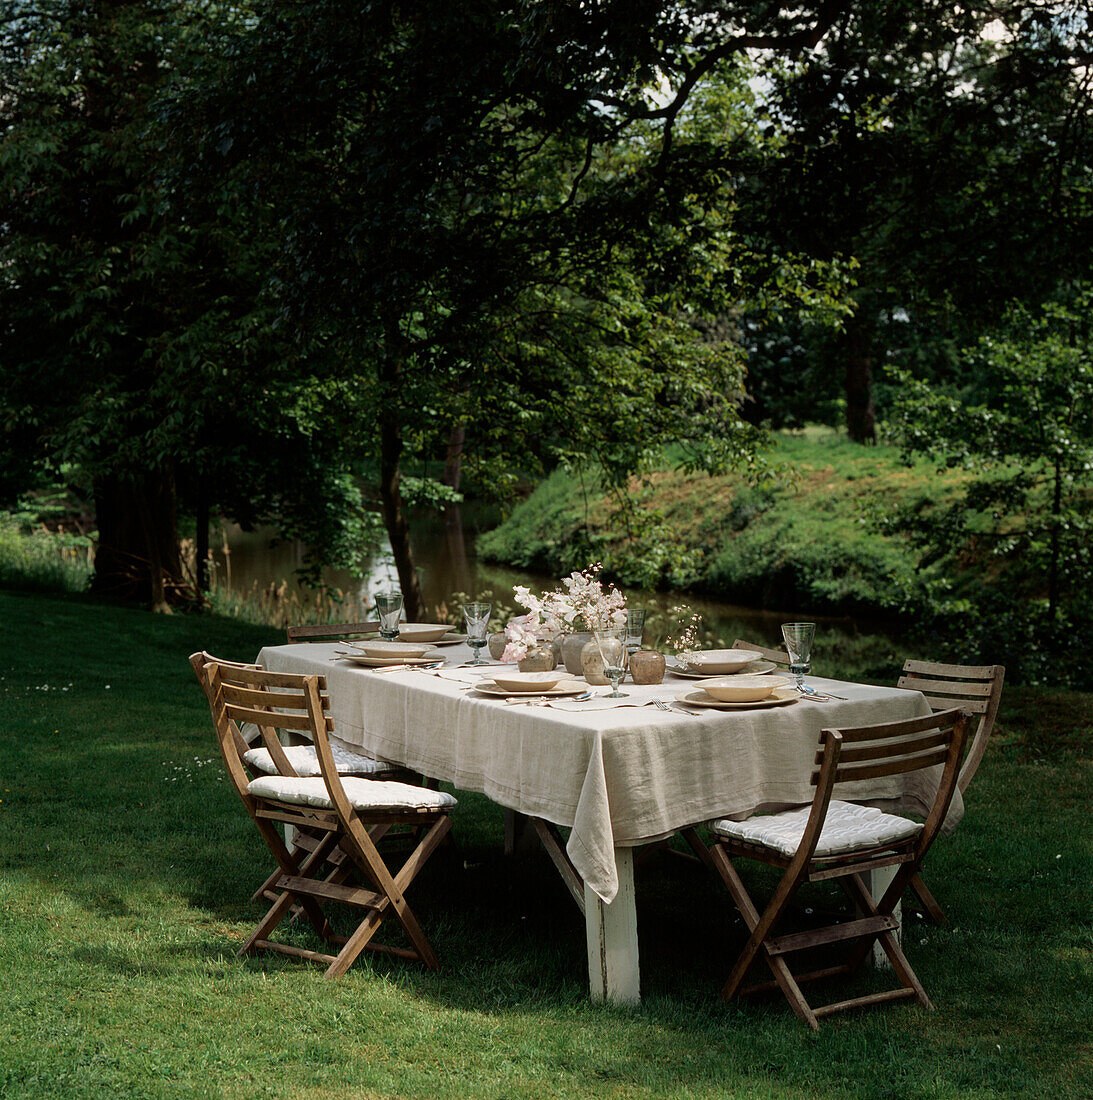 Gedeckter Tisch für eine Gartenparty an einem idyllischen Ort an einem von Bäumen gesäumten Fluss in der Sommerzeit